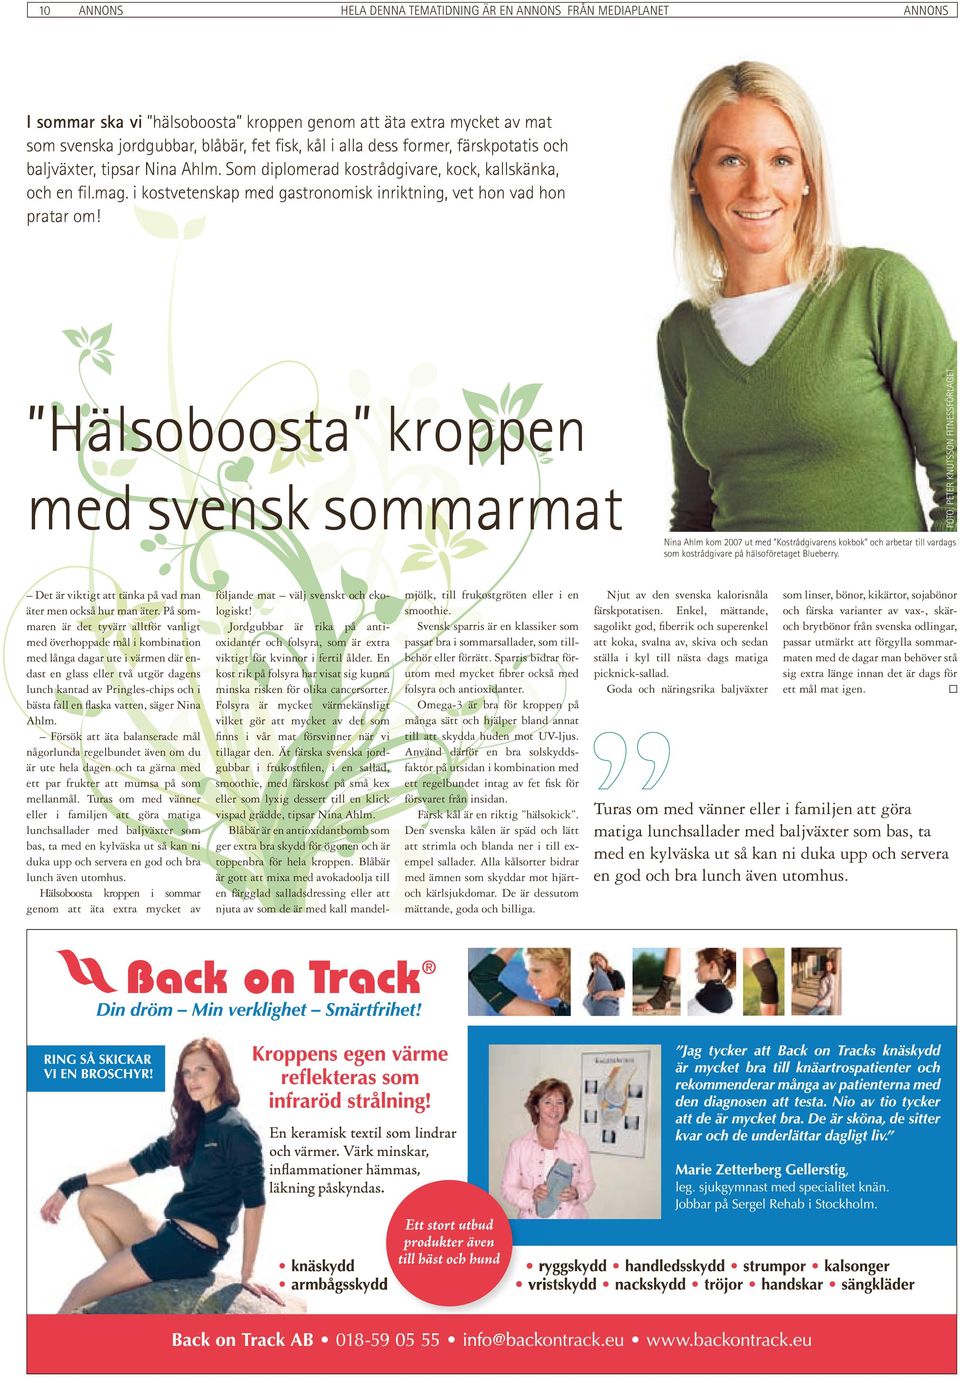 Hälsoboosta kroppen med svensk sommarmat FOTO: PETER KNUTSSON FITNESSFÖRLAGET Nina Ahlm kom 2007 ut med Kostrådgivarens kokbok och arbetar till vardags som kostrådgivare på hälsoföretaget Blueberry.